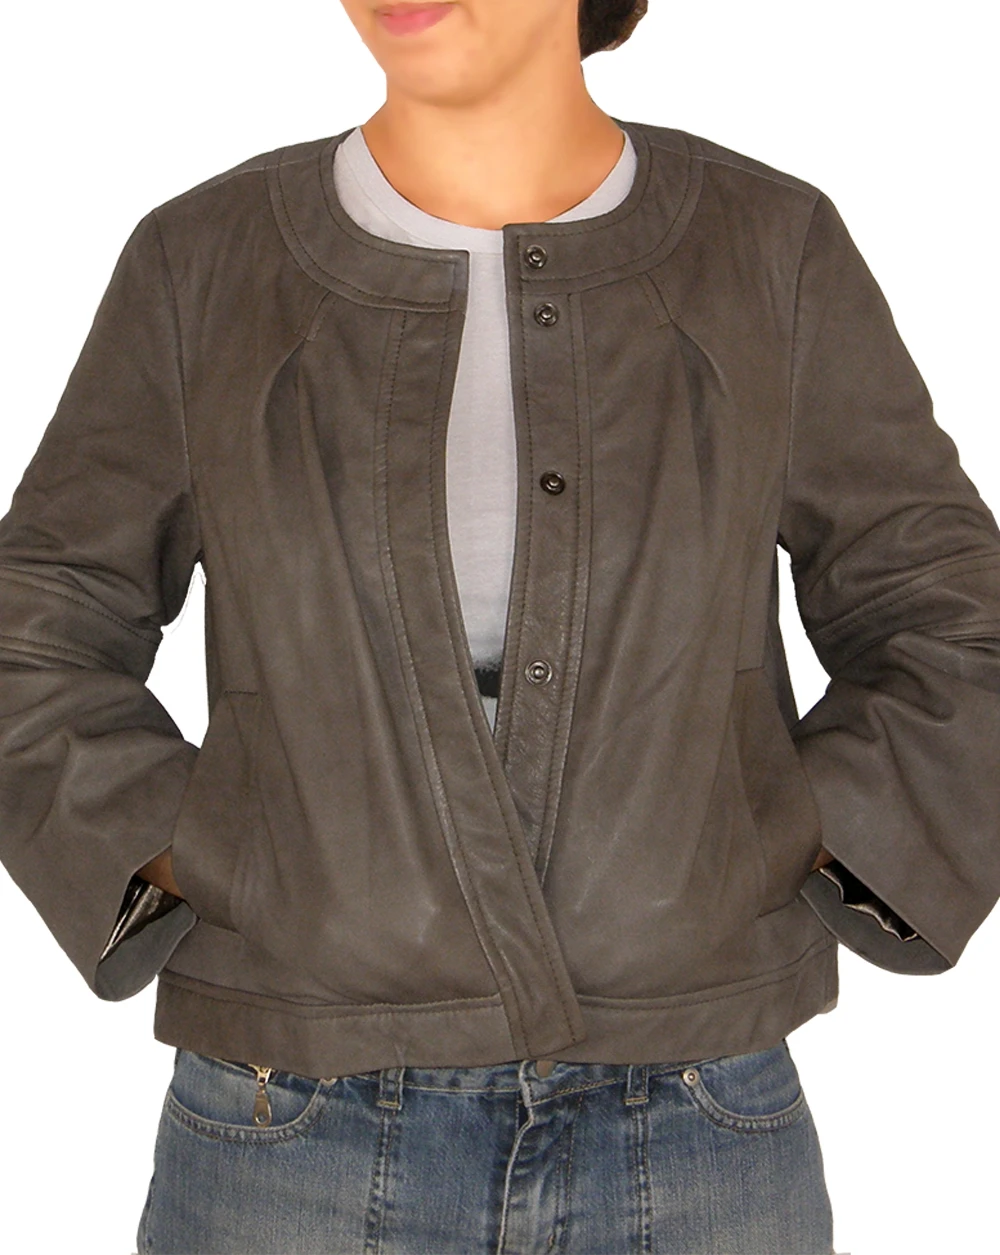 Merriam round neck leather jacket